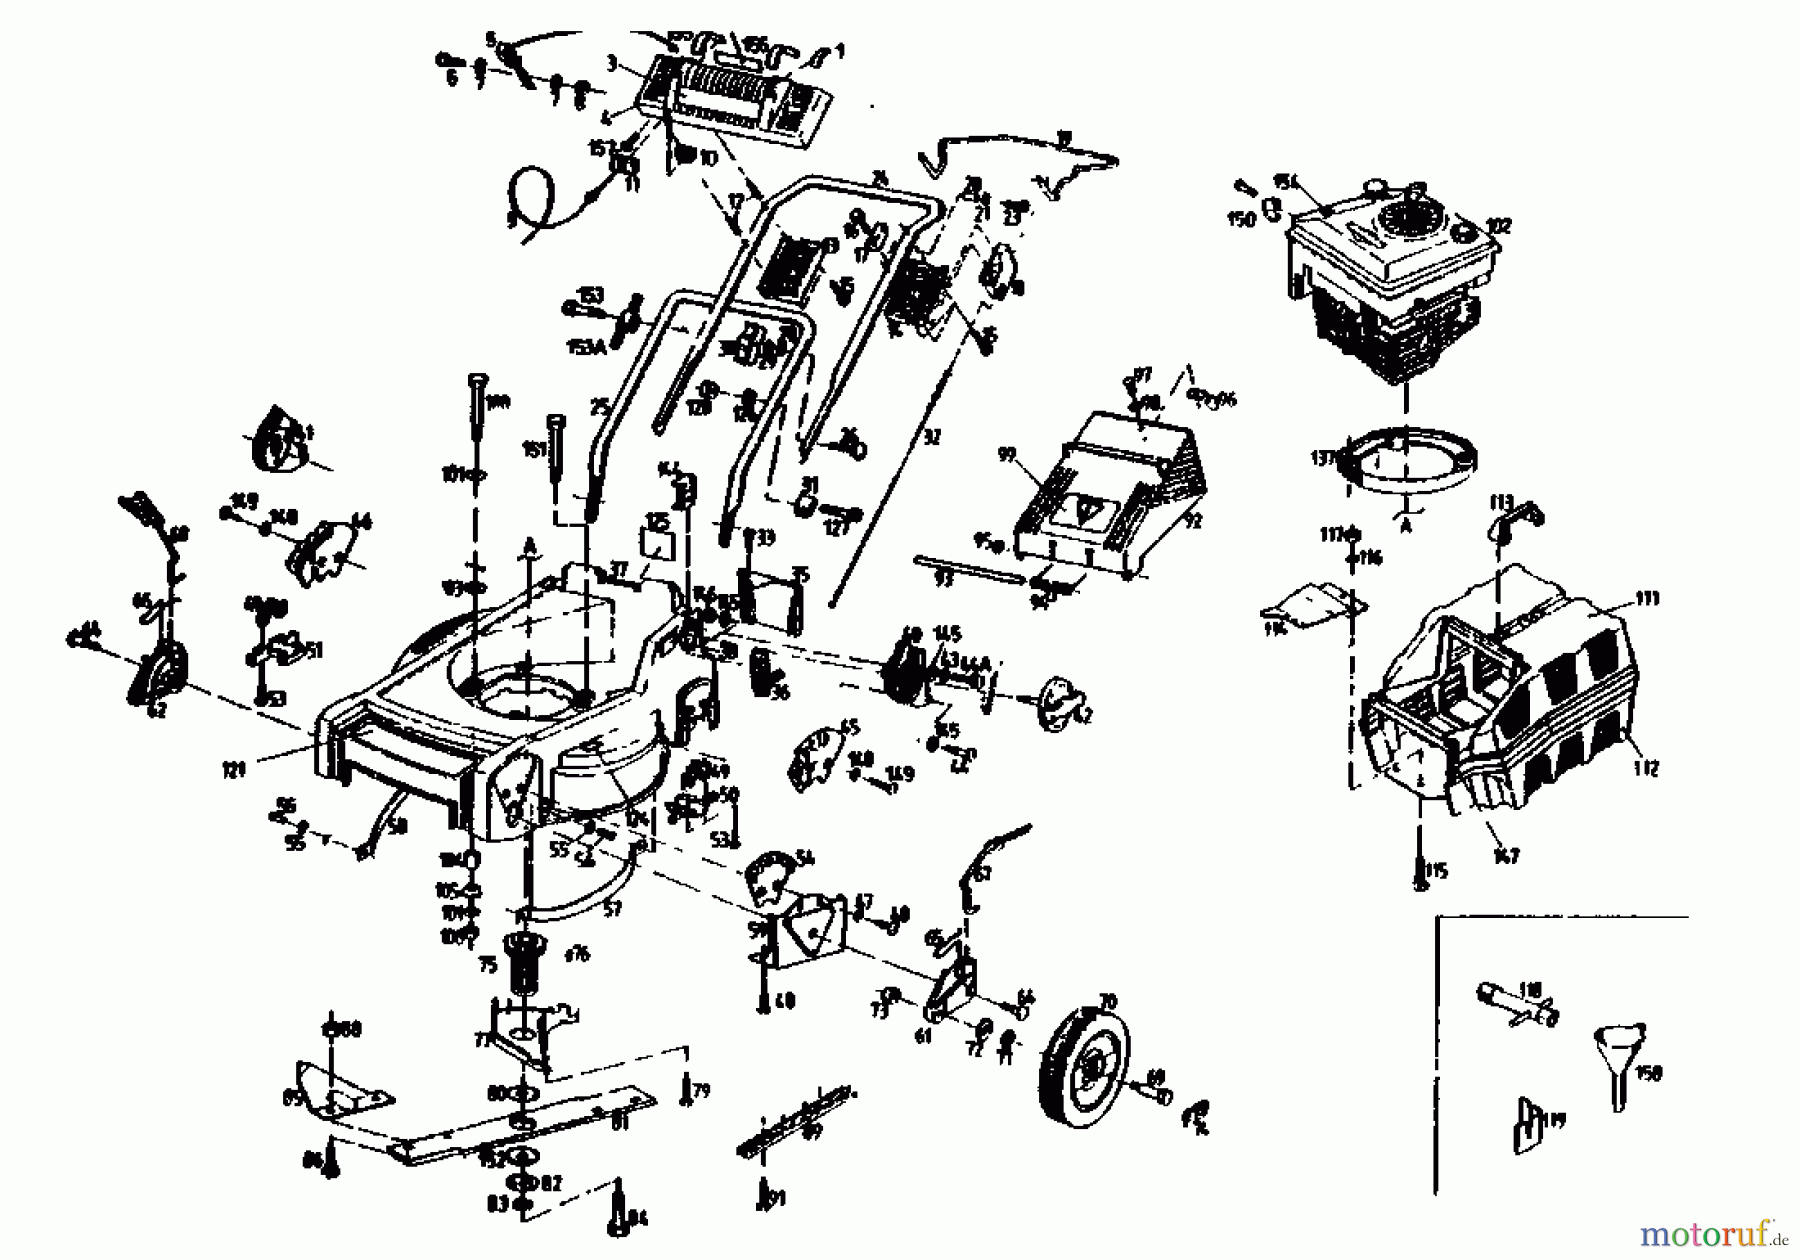  Gutbrod Motormäher mit Antrieb HB 47 R-4 BS 04001.01  (1991) Grundgerät